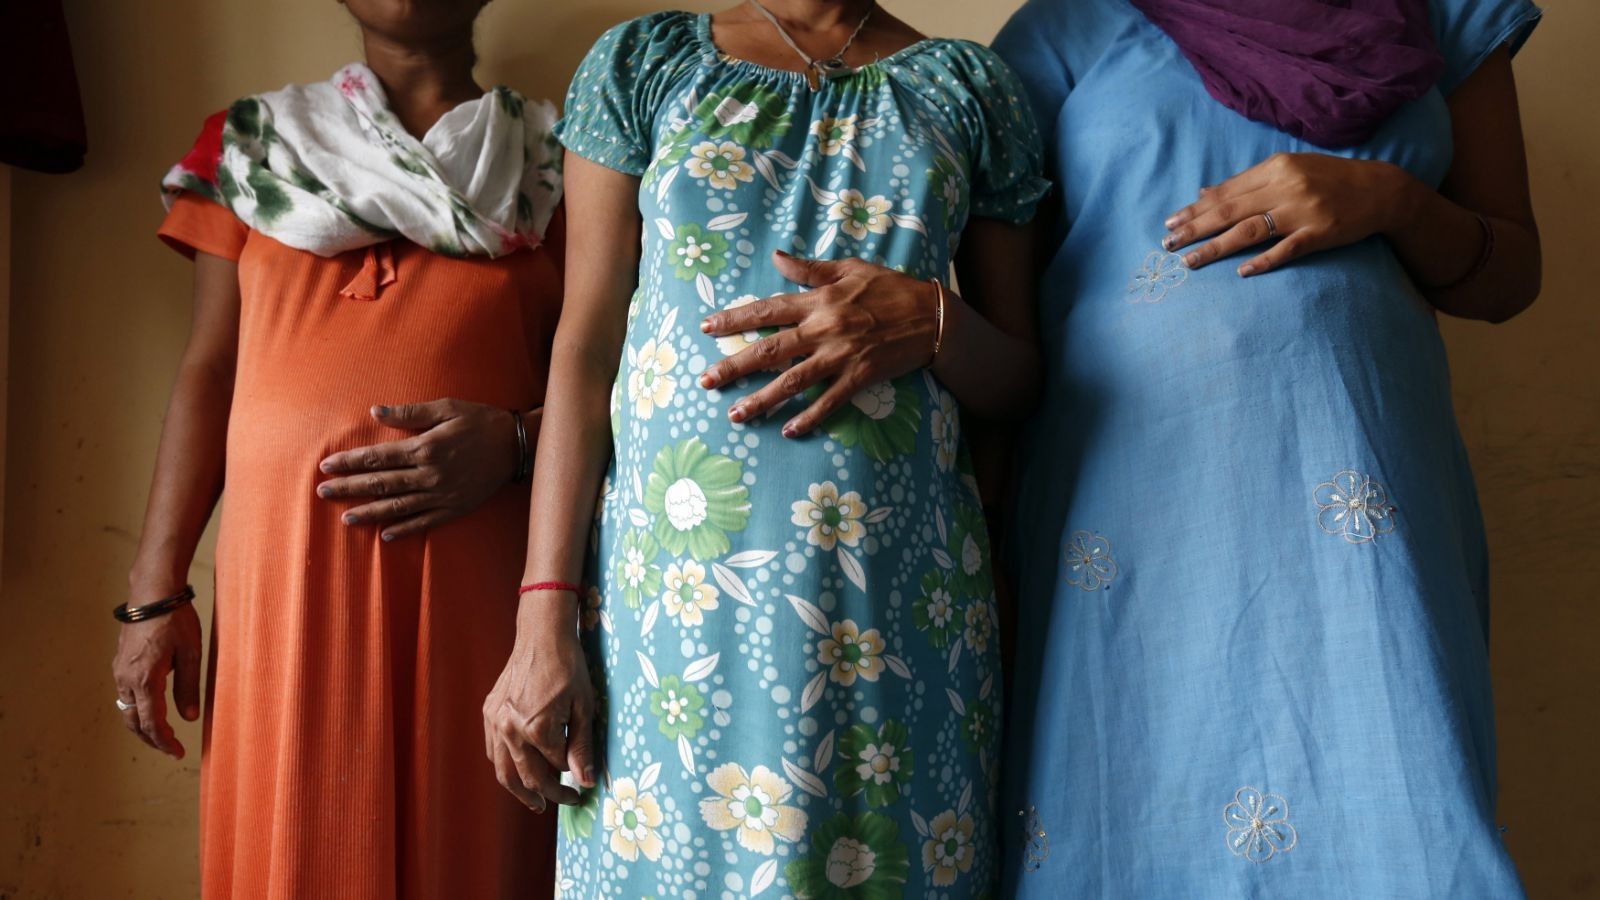 उत्तर प्रदेश की एक लाख गर्भवती महिलाओं को जान का खतरा 